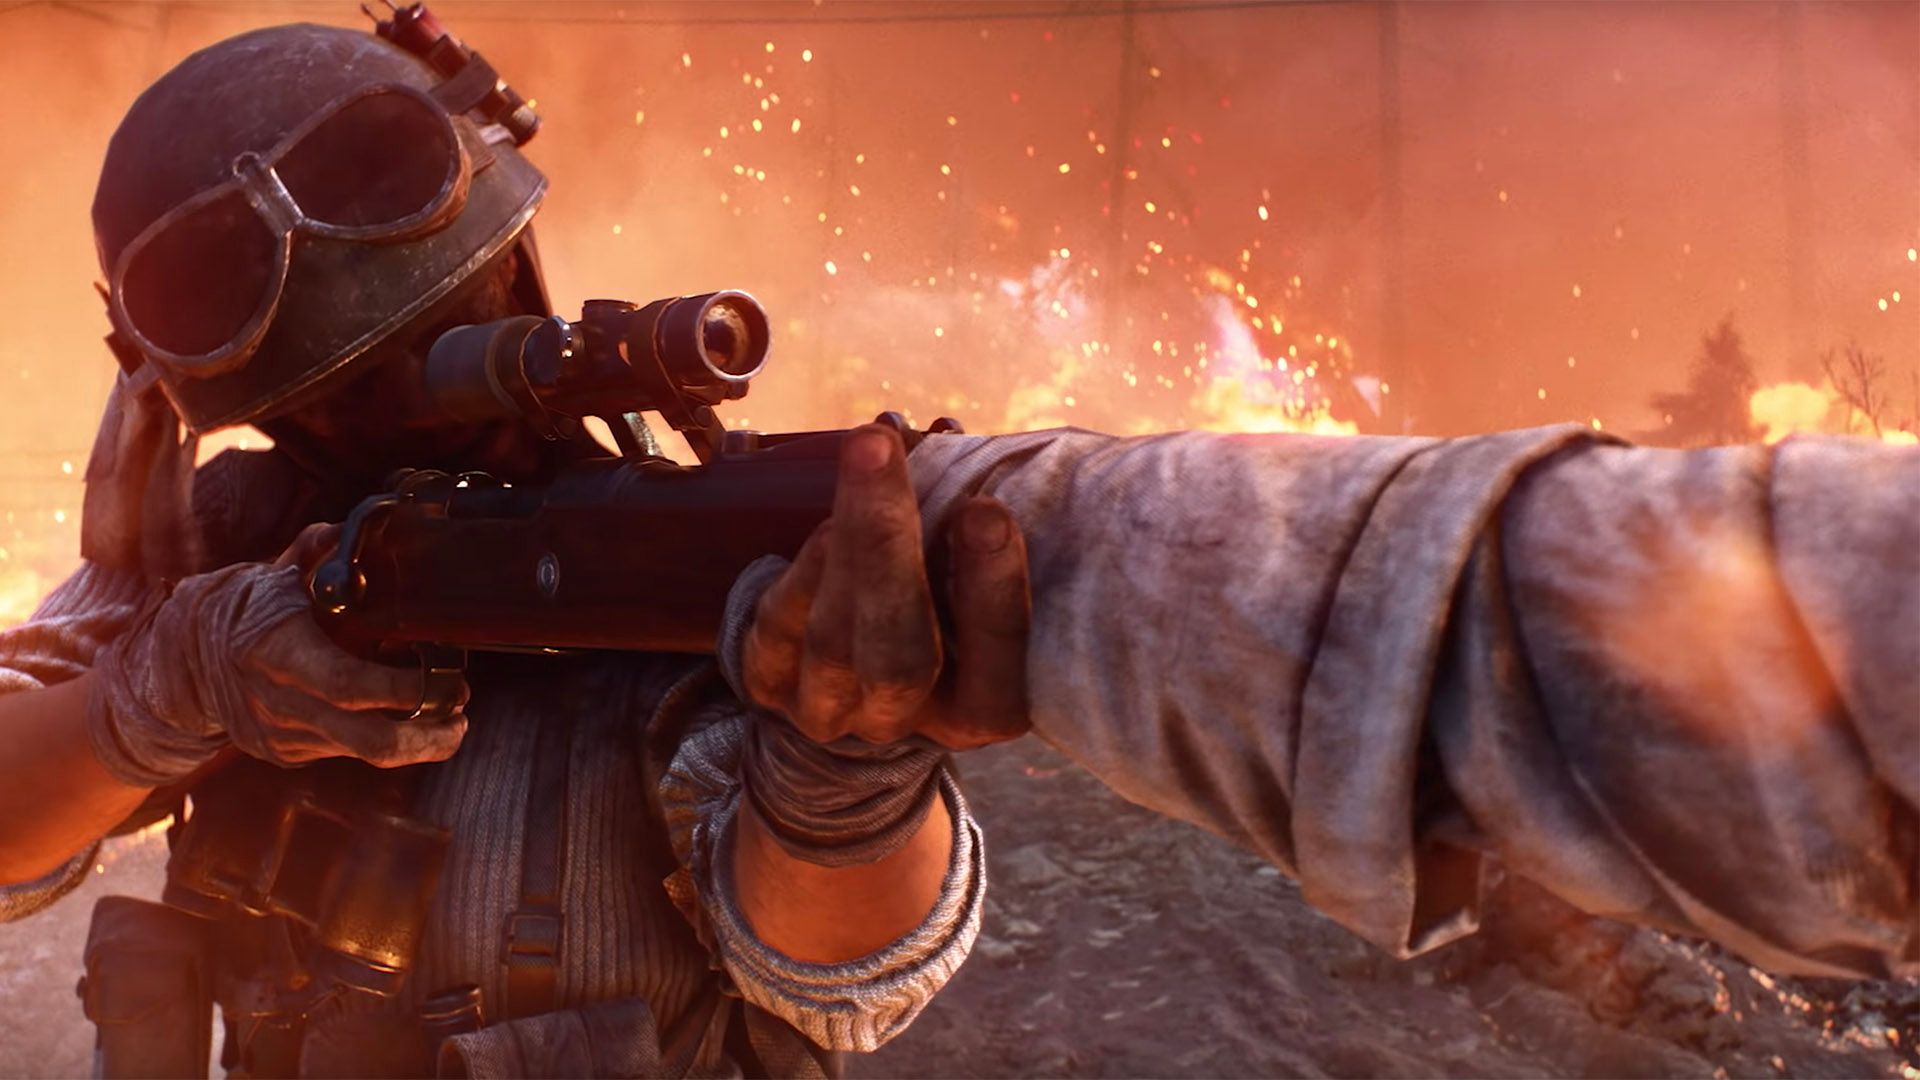 Battlefield V Firestorm Battle Royale mode release date and official trailer revealed image 1